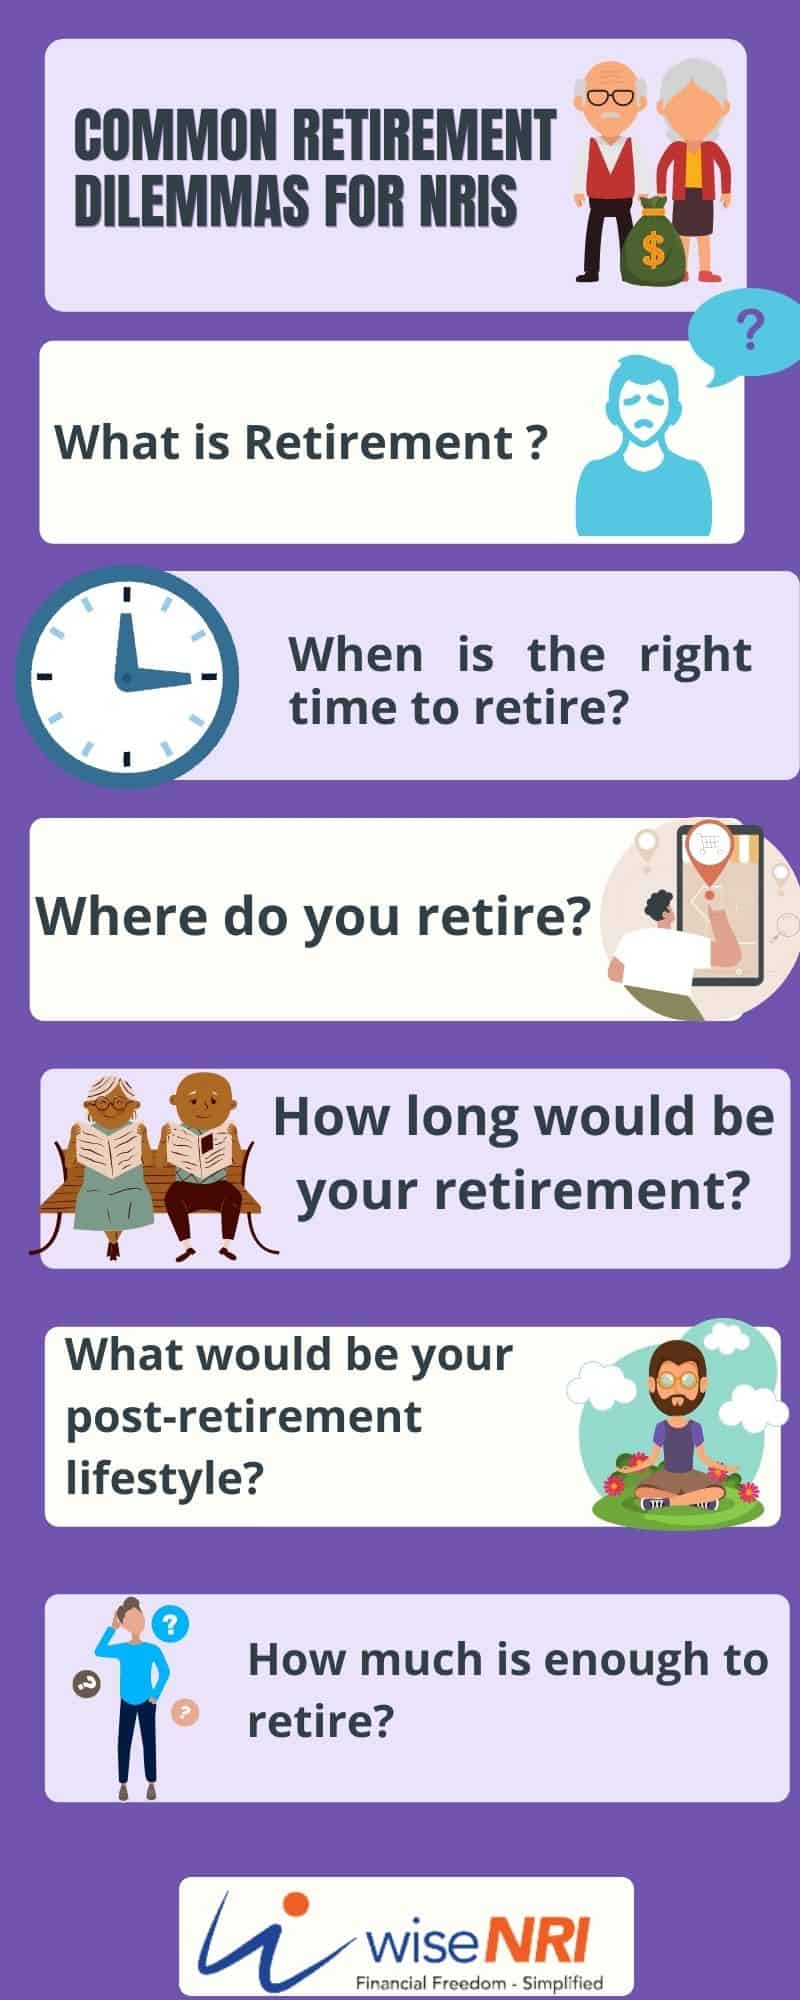 Common Retirement Dilemmas For NRIs